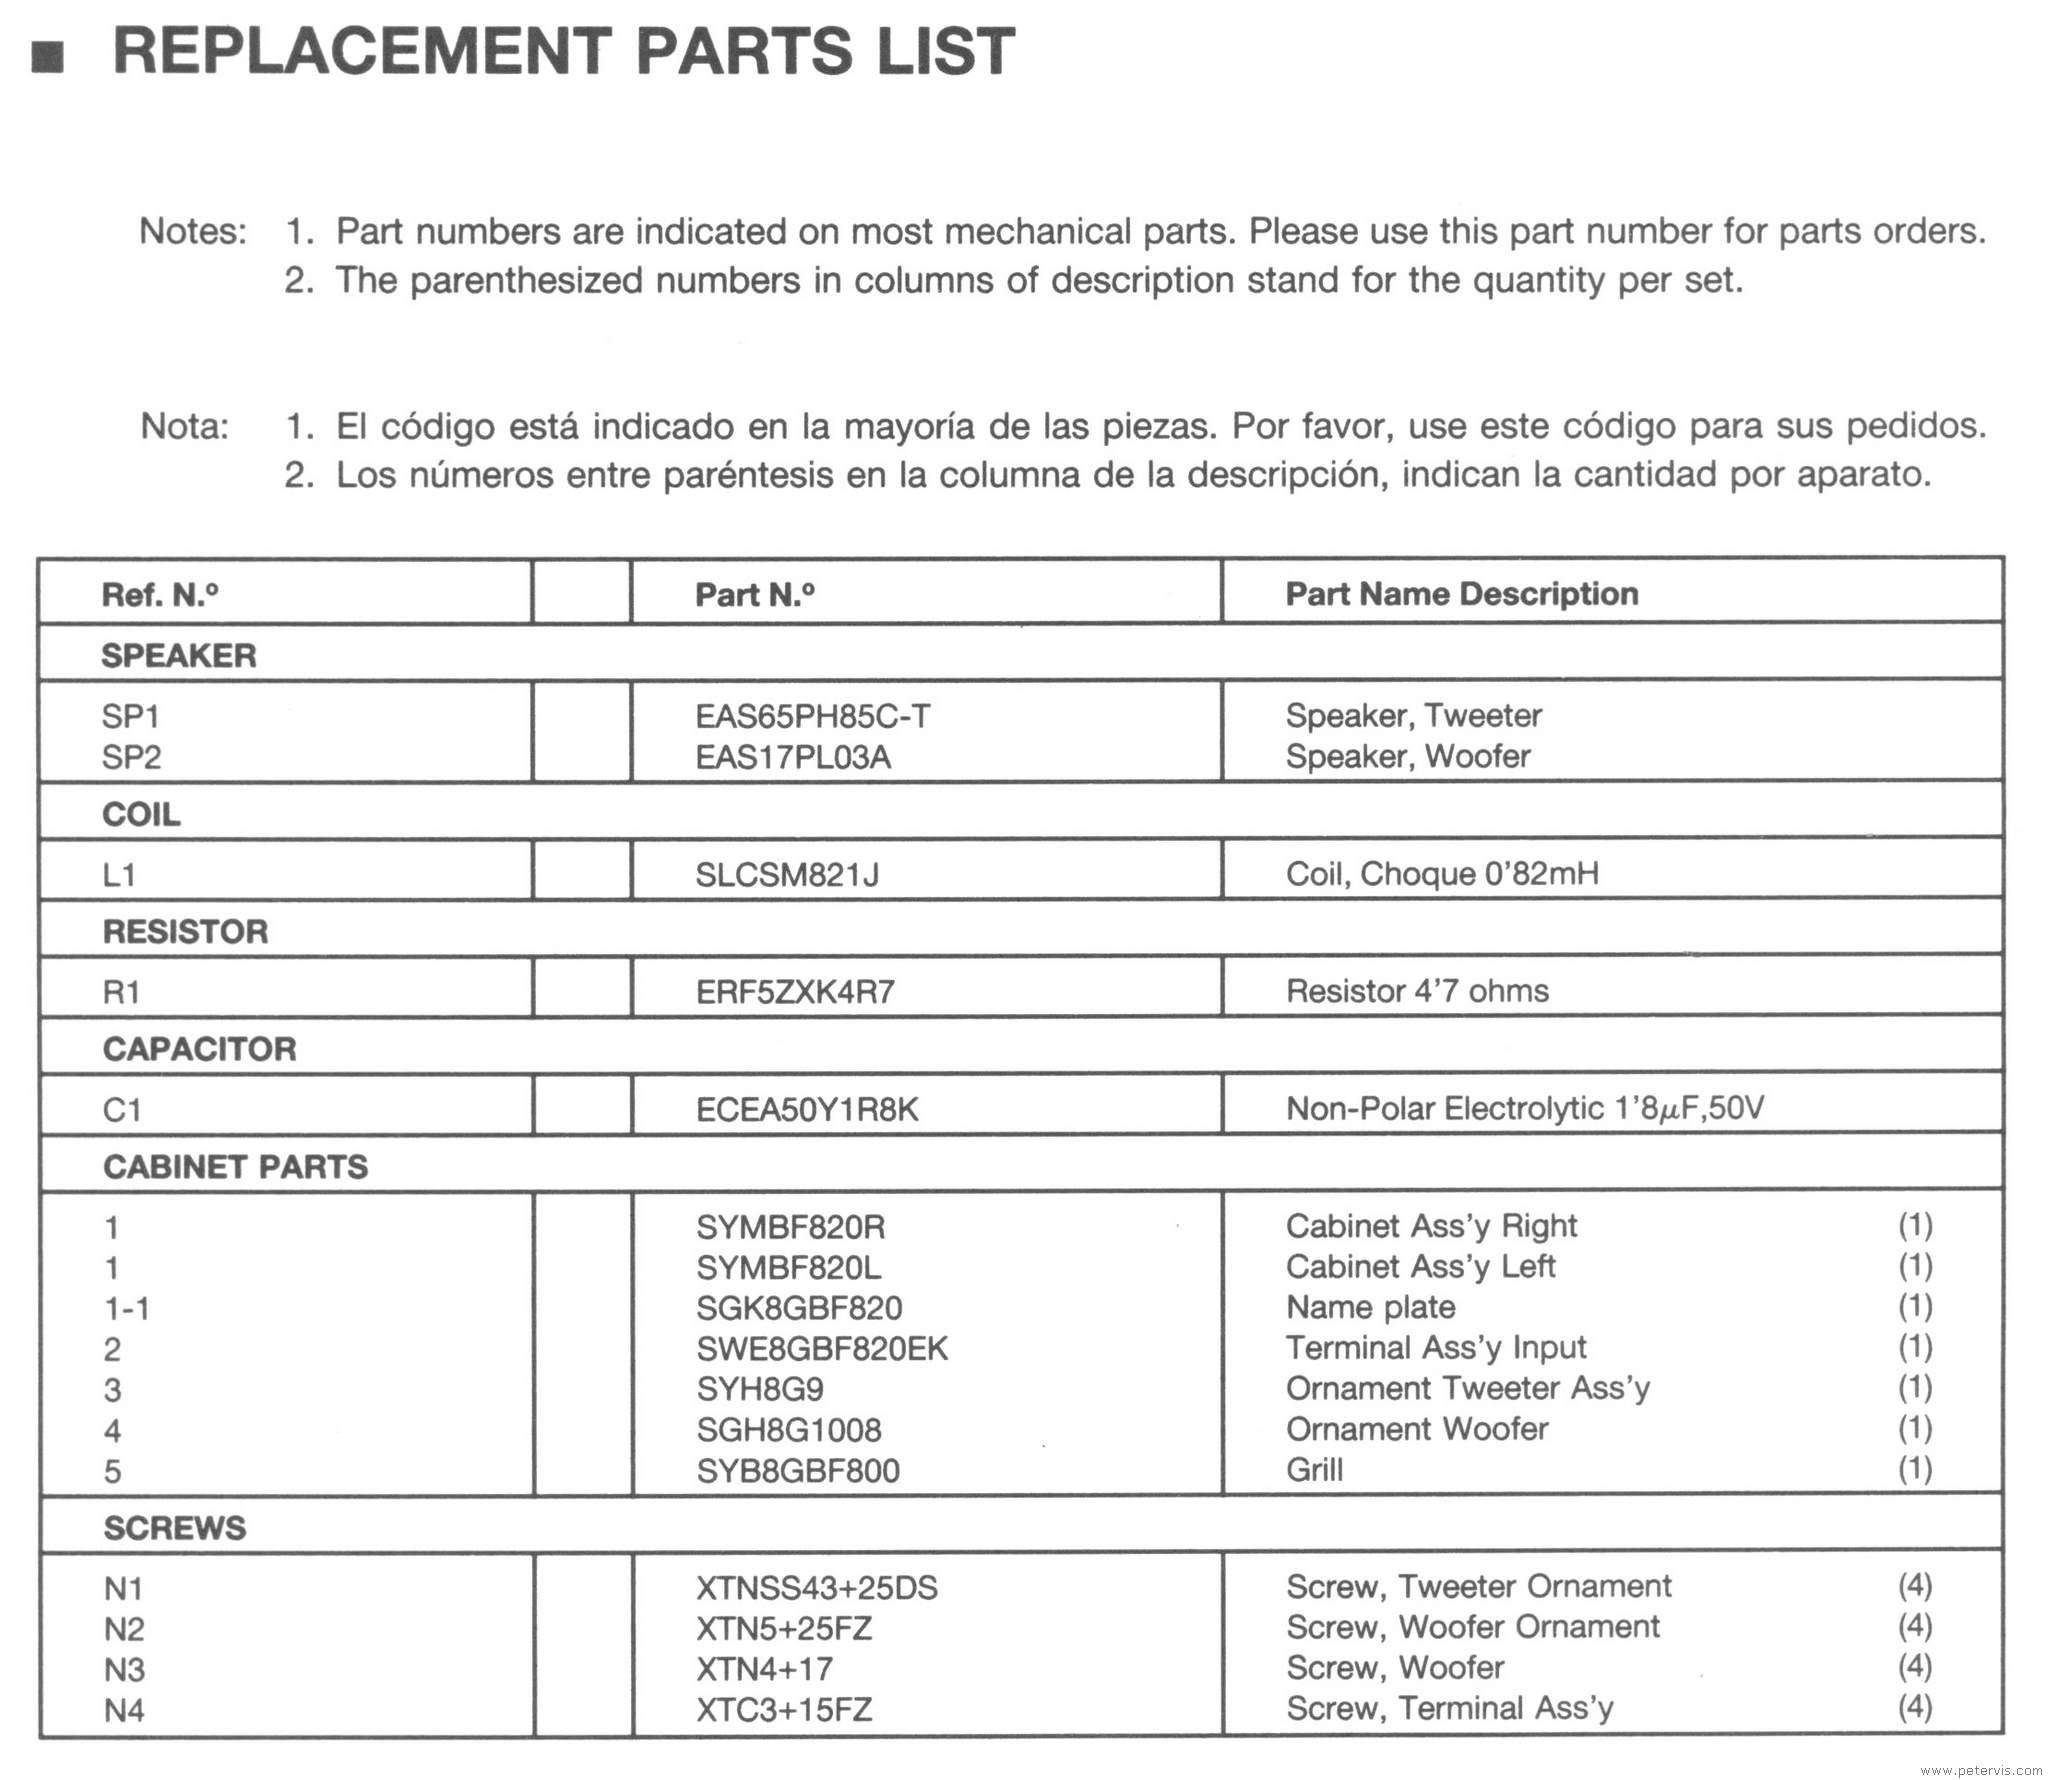 Parts List